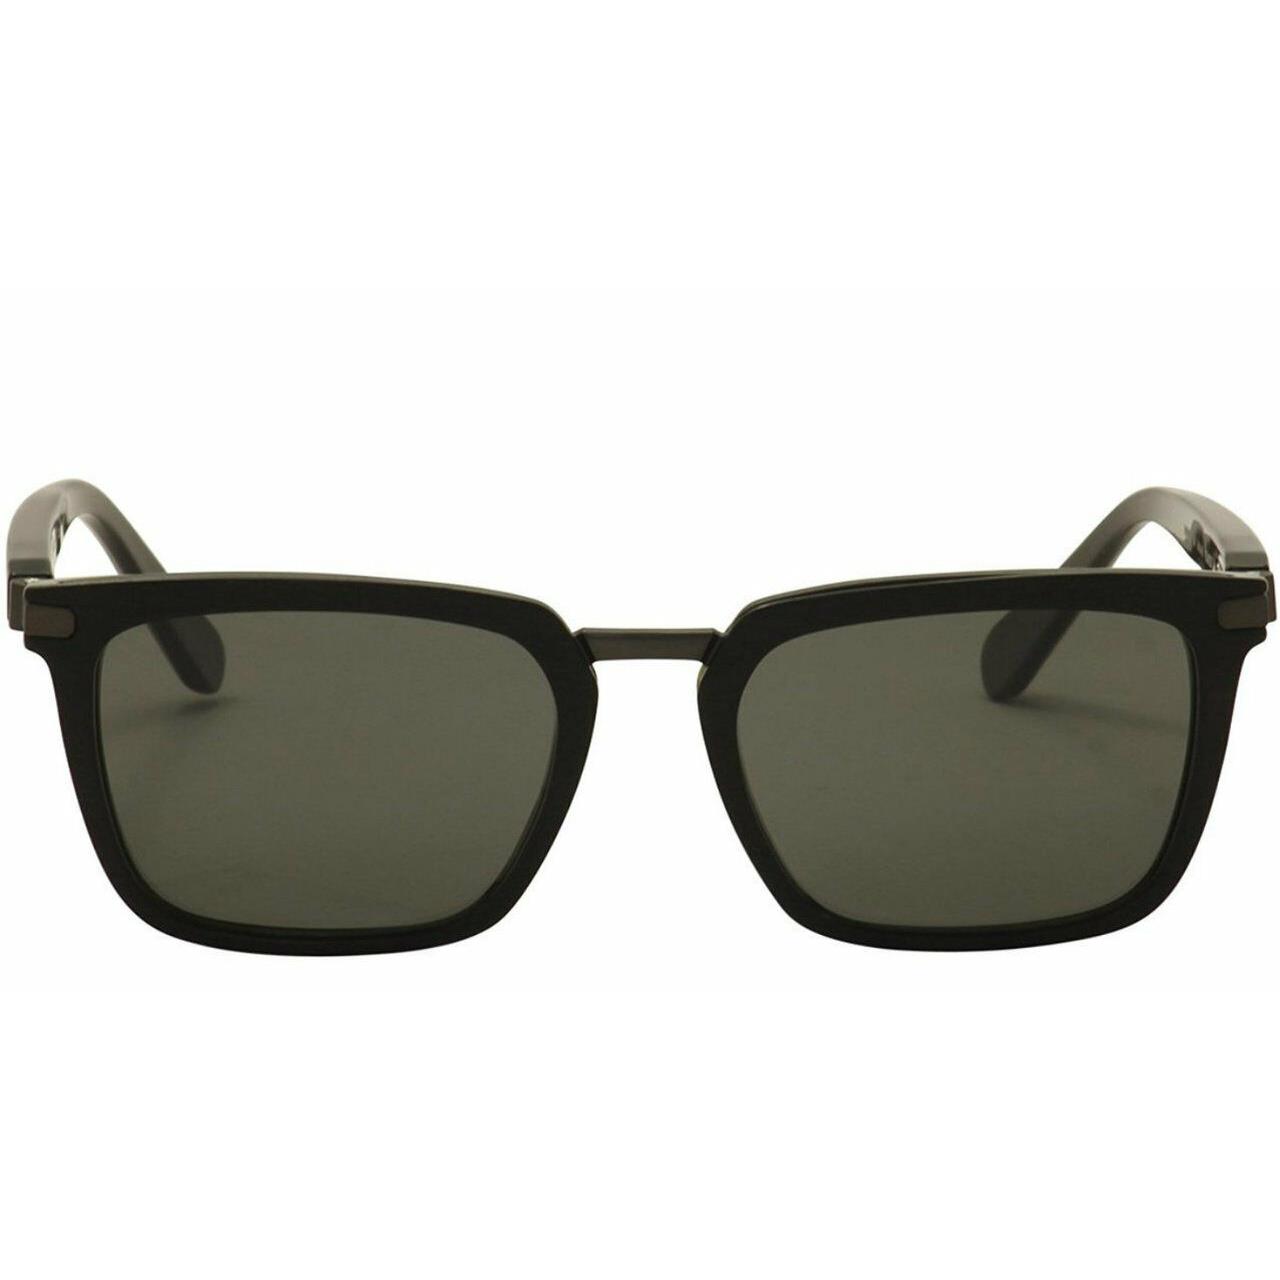 Sunglasses Brioni BR 0039 S 001 BLACK/GREEN GOLD